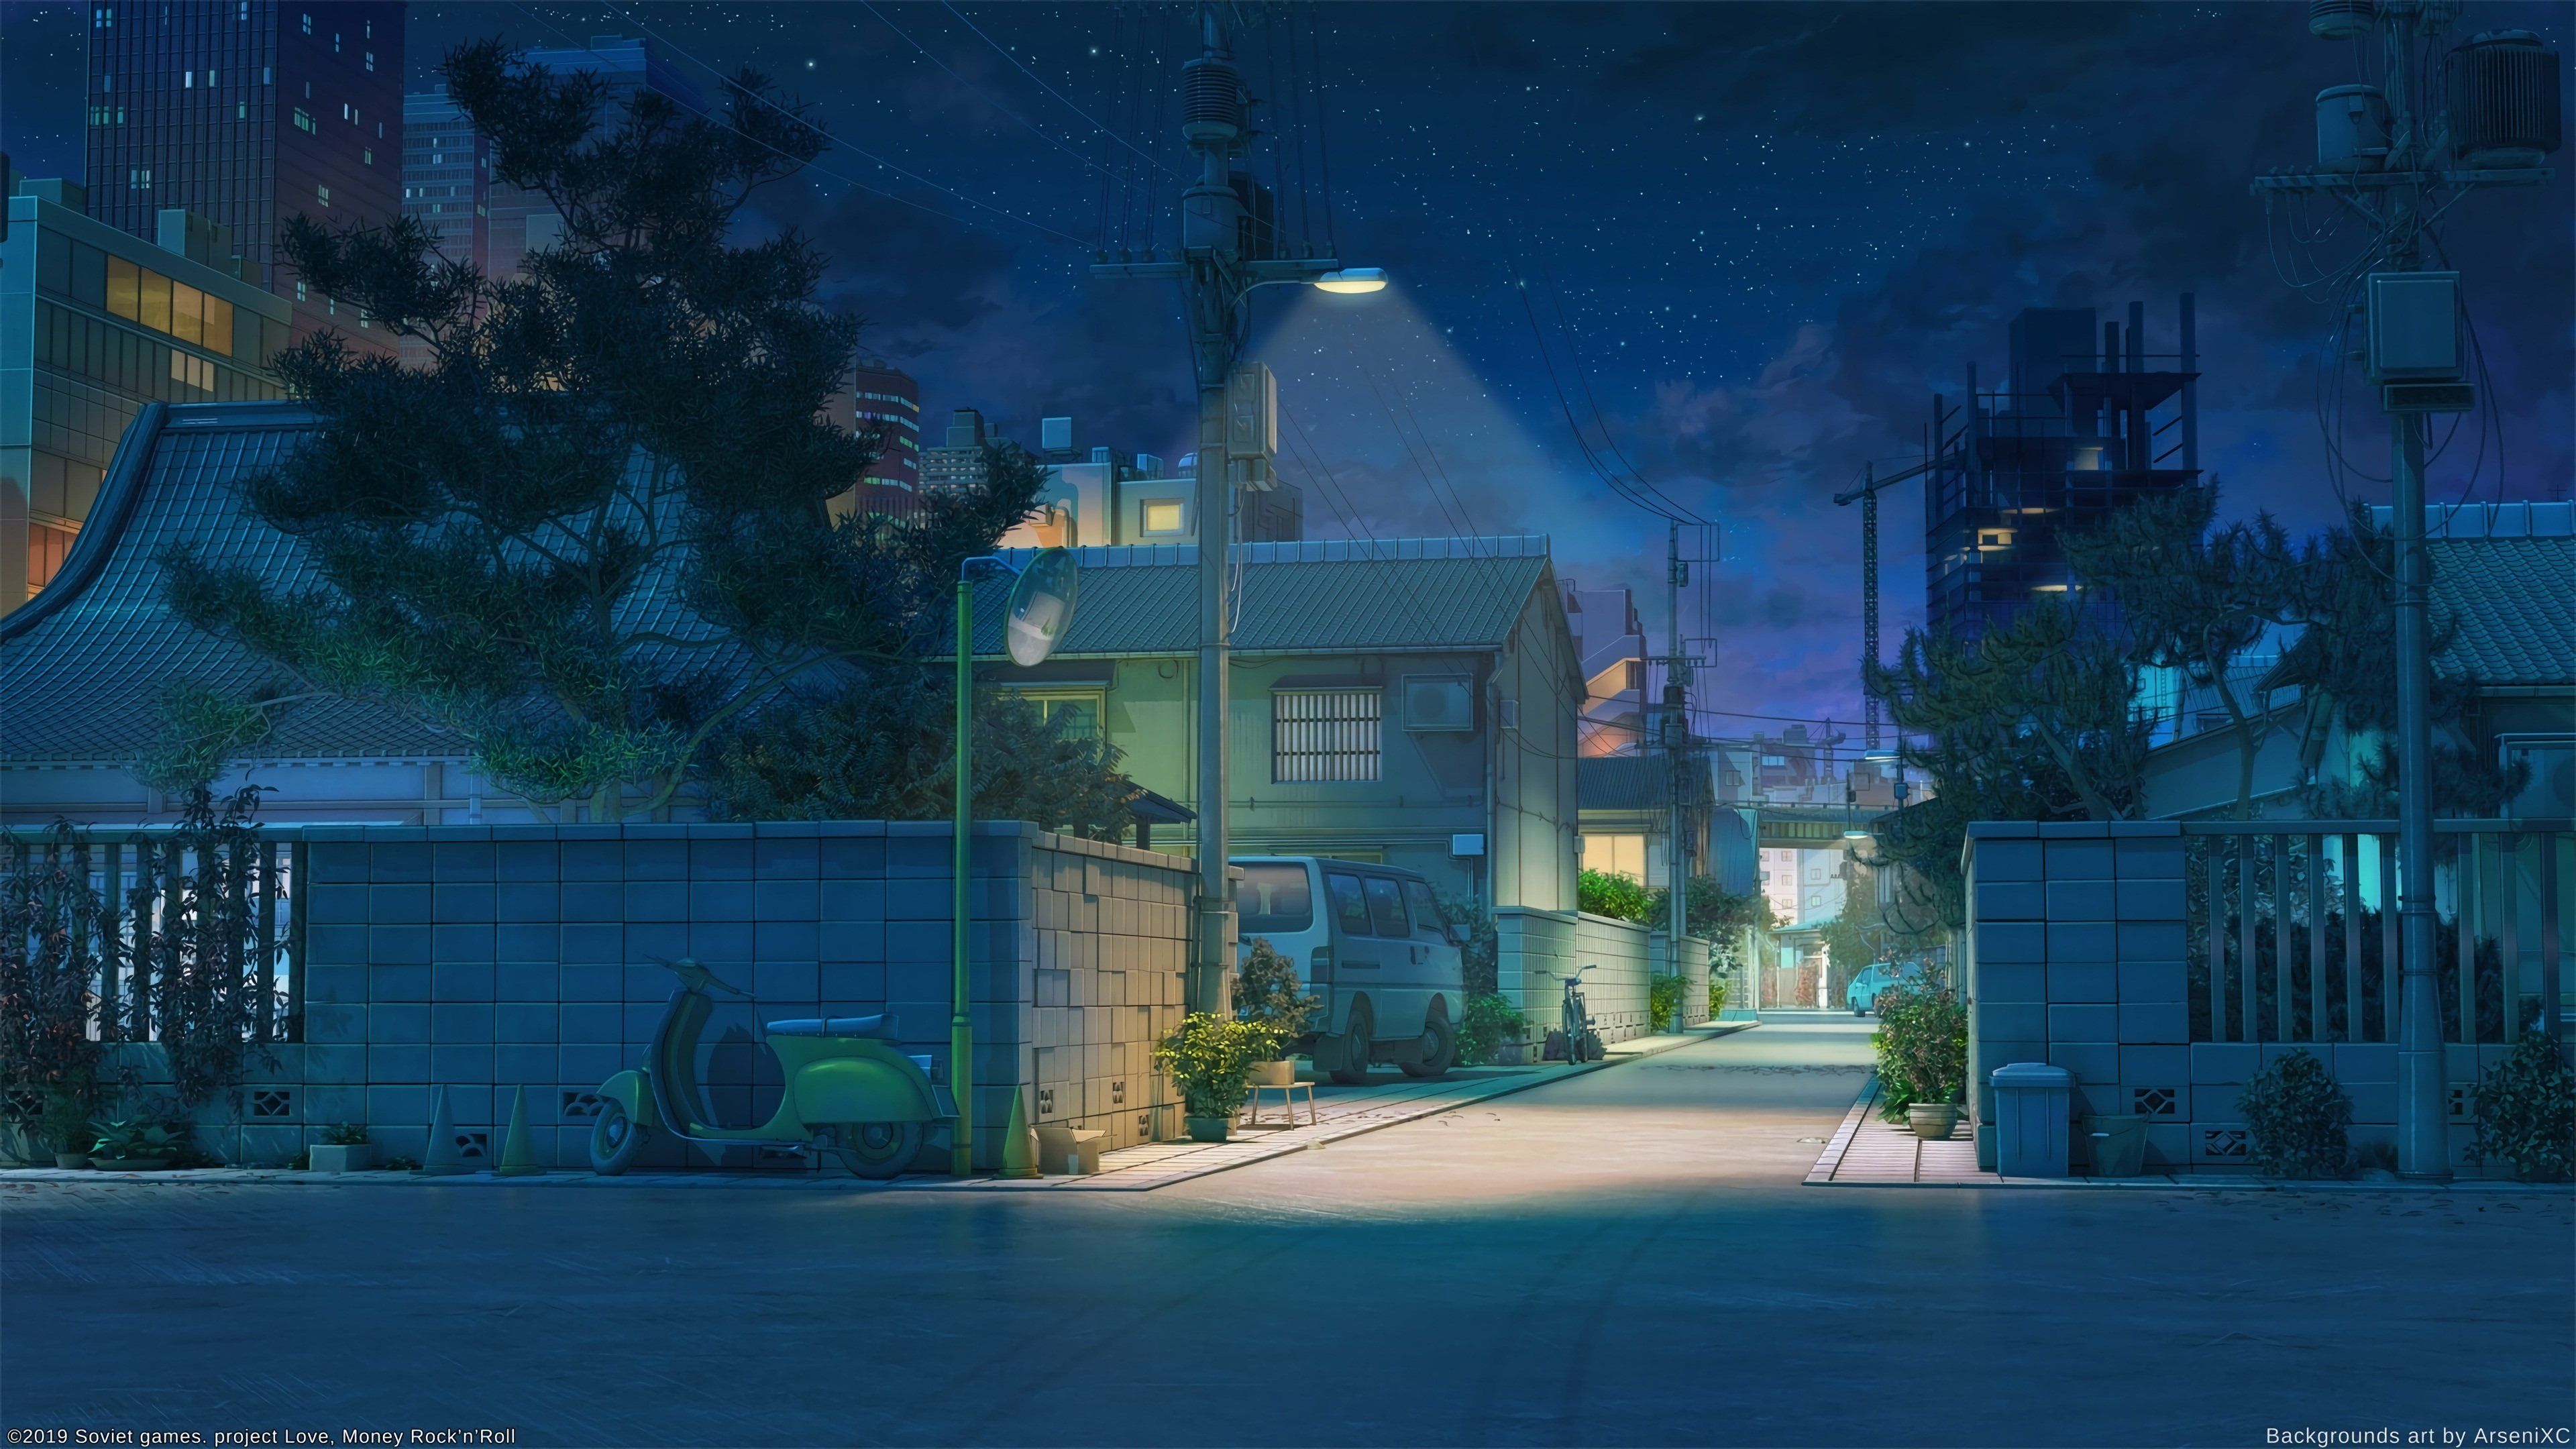 Hình nền anime đường phố: Tận hưởng không khí đô thị tôi màu sắc với bộ sưu tập hình nền anime đường phố của chúng tôi. Những bức ảnh tuyệt đẹp ánh sáng đô thị, những cảnh phố vắng lặng, hay những đường phố đông đúc chắc chắn sẽ đem lại cho bạn cảm giác tuyệt vời và khó quên.